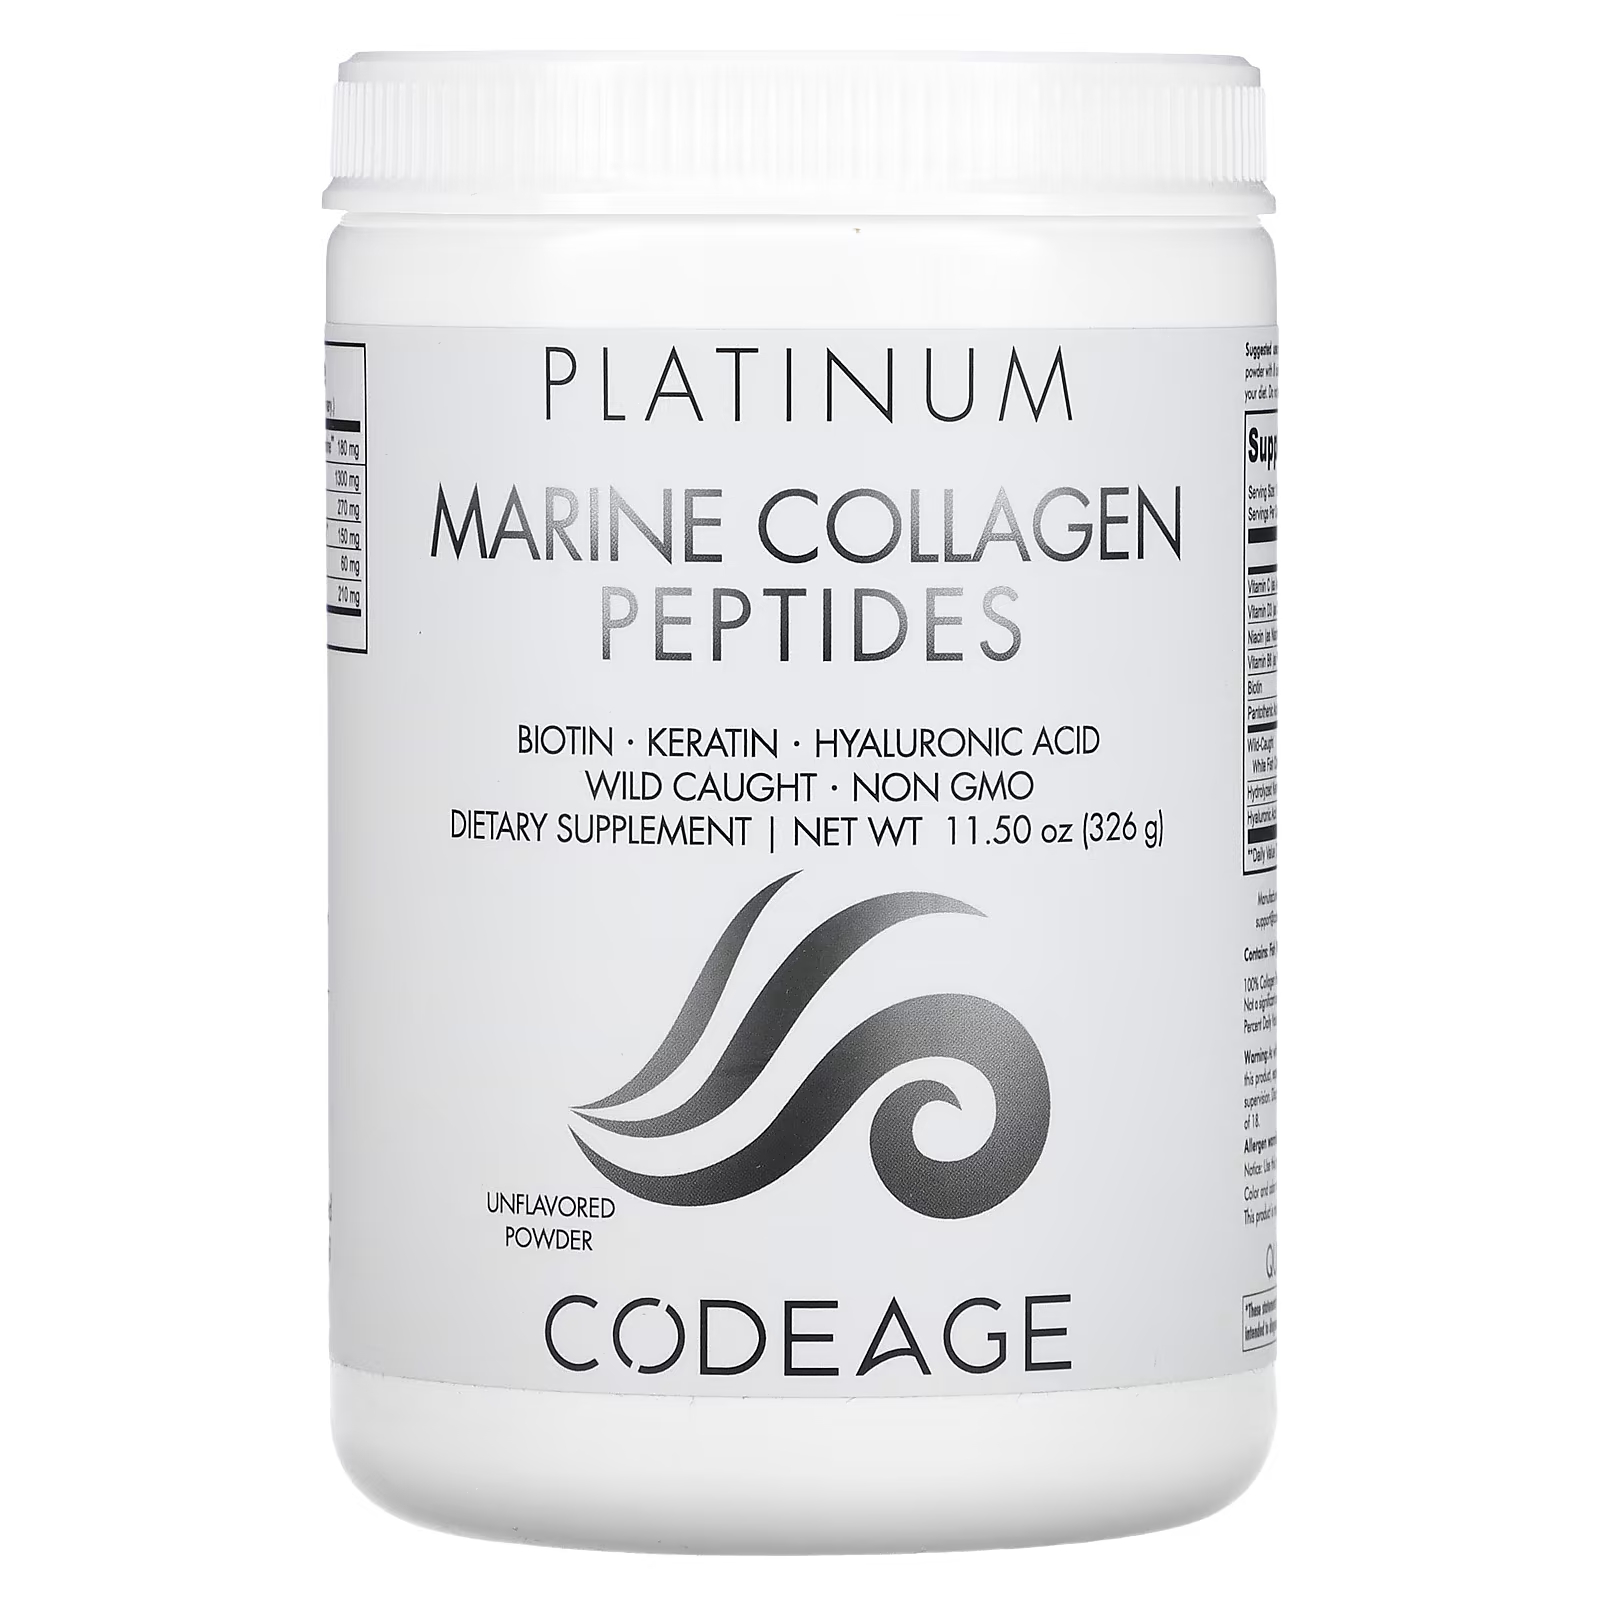 Пищевая добавка Codeage Platinum пептиды морского коллагена без вкуса, 326г пищевая добавка codeage гидролизованные мультиколлагеновые пептиды без вкуса 300г